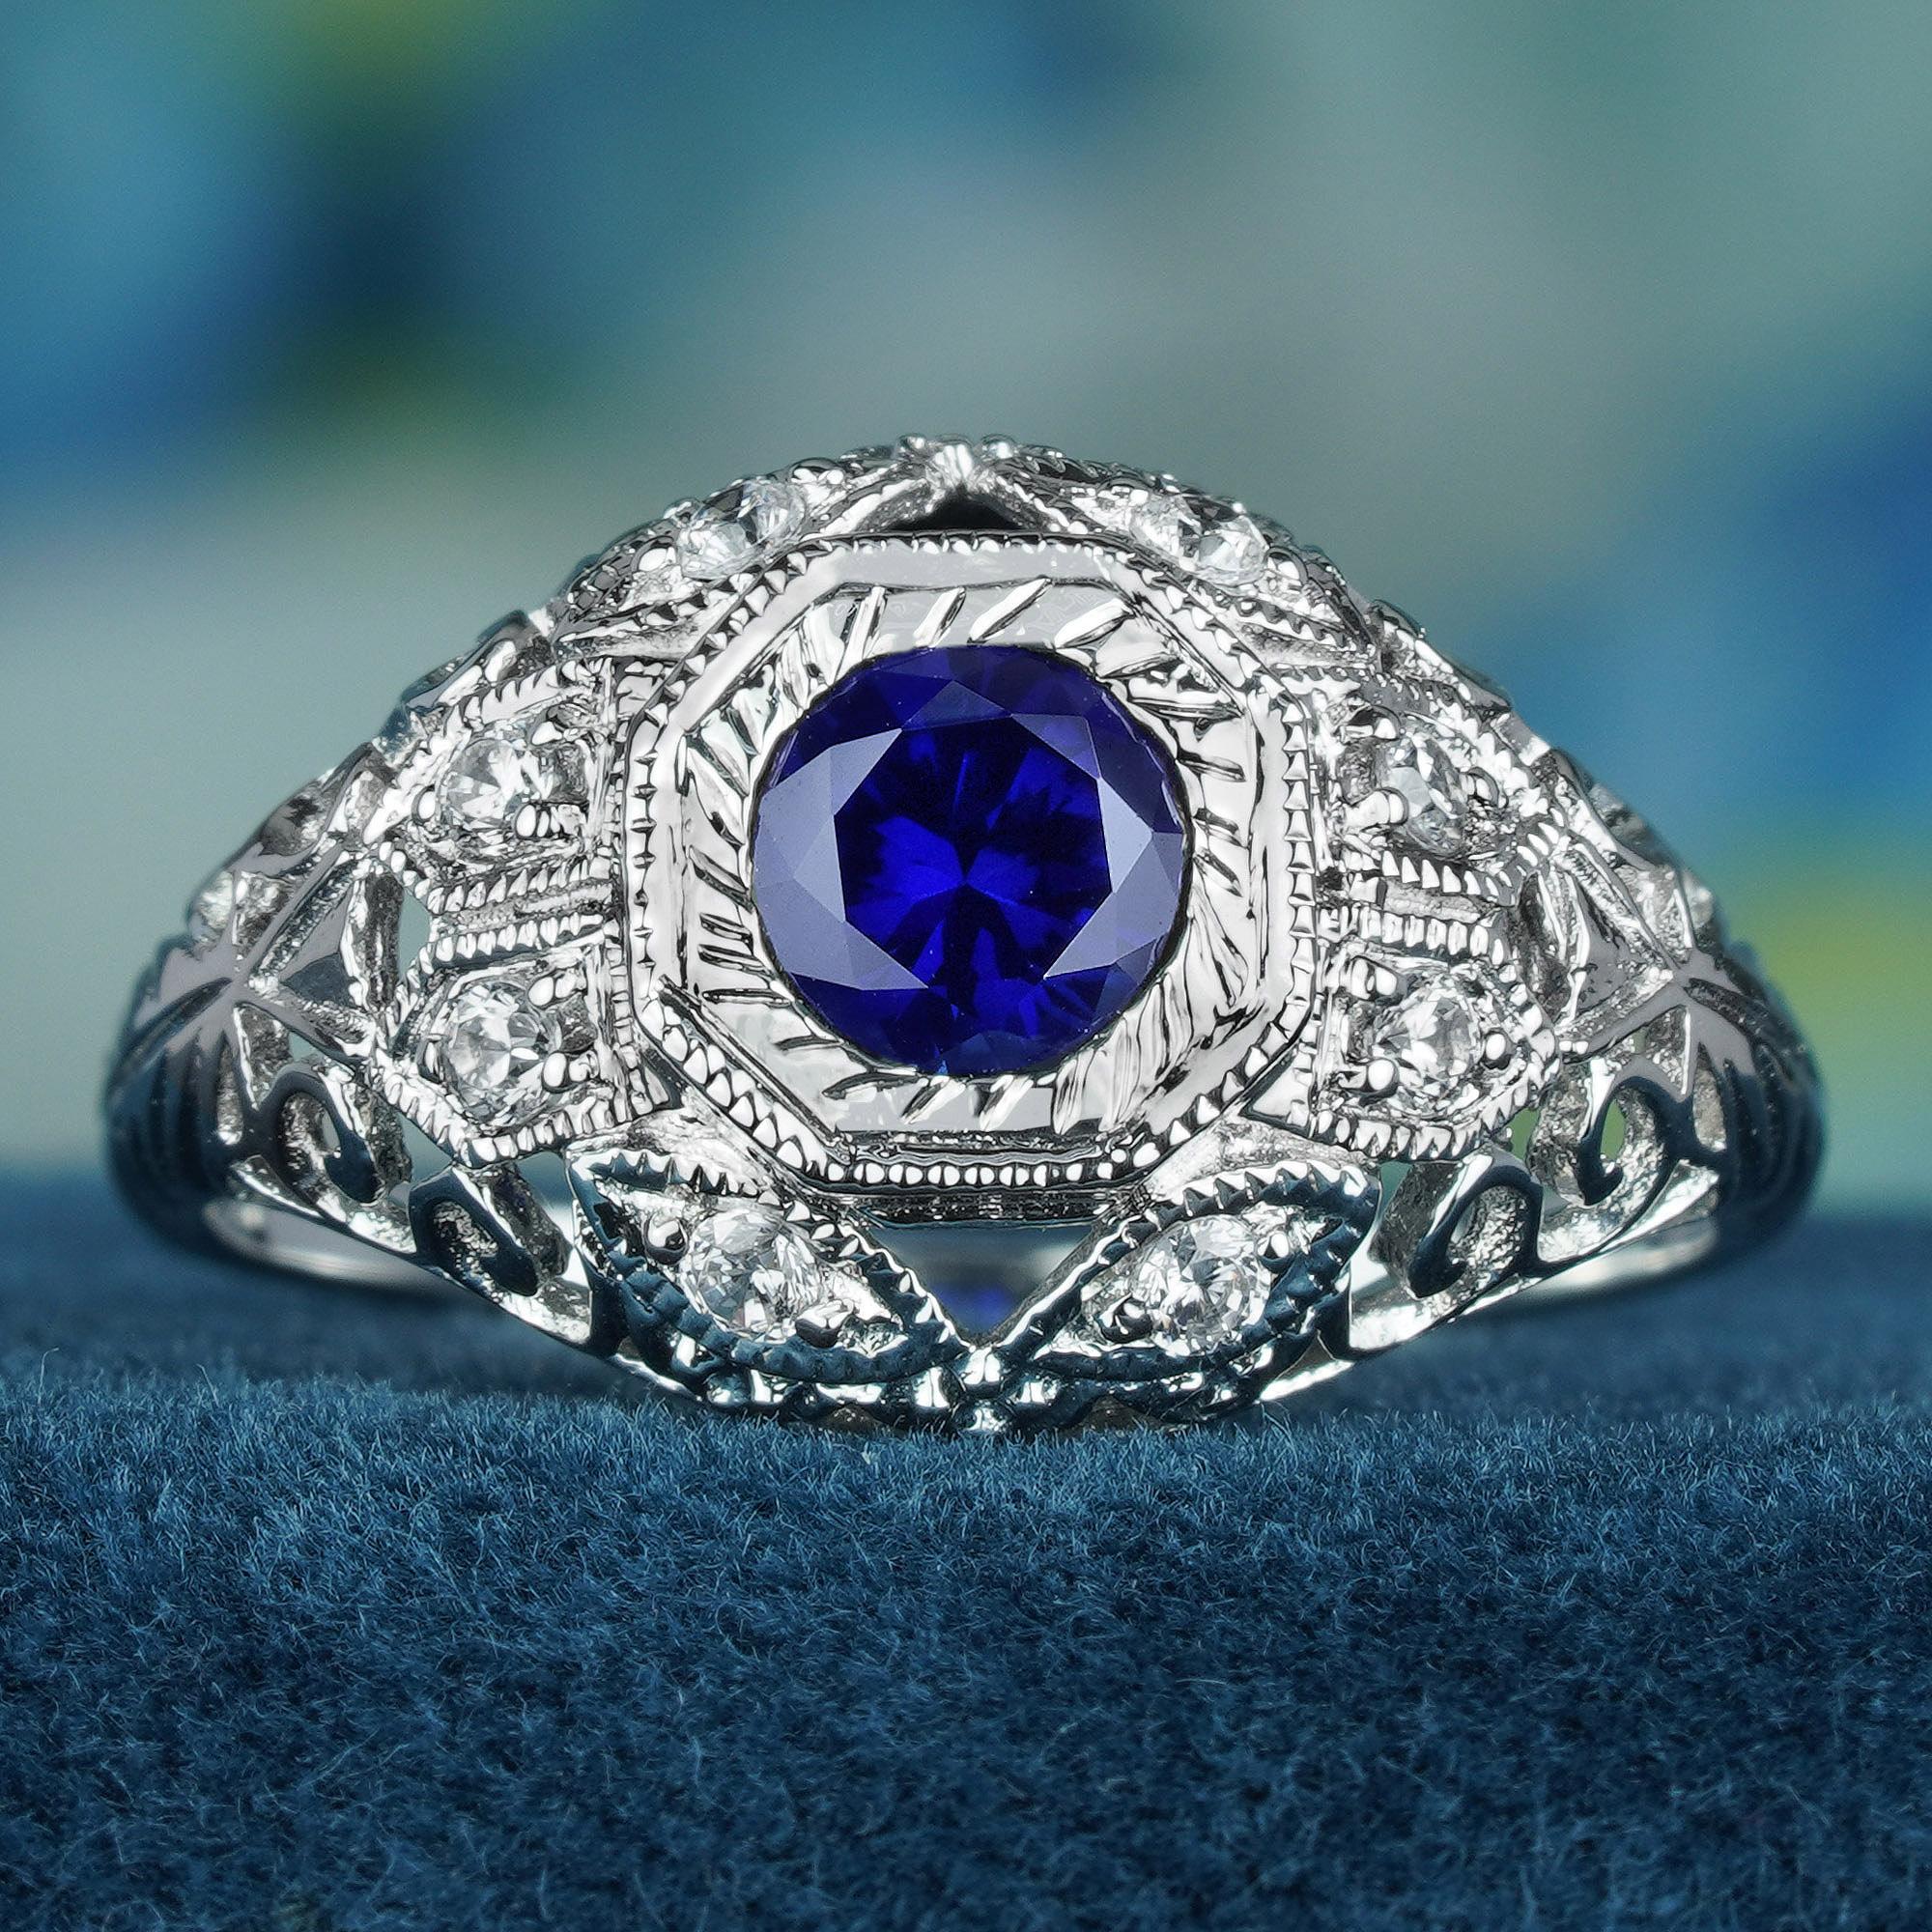 Die filigranen Verzierungen auf dem Ringband sind ein einzigartiges und bezauberndes Element, das dem Gesamtdesign dieses vom Vintage-Stil inspirierten Kuppelrings einen skurrilen Charme verleiht. Die Diamanten sind gekonnt integriert und